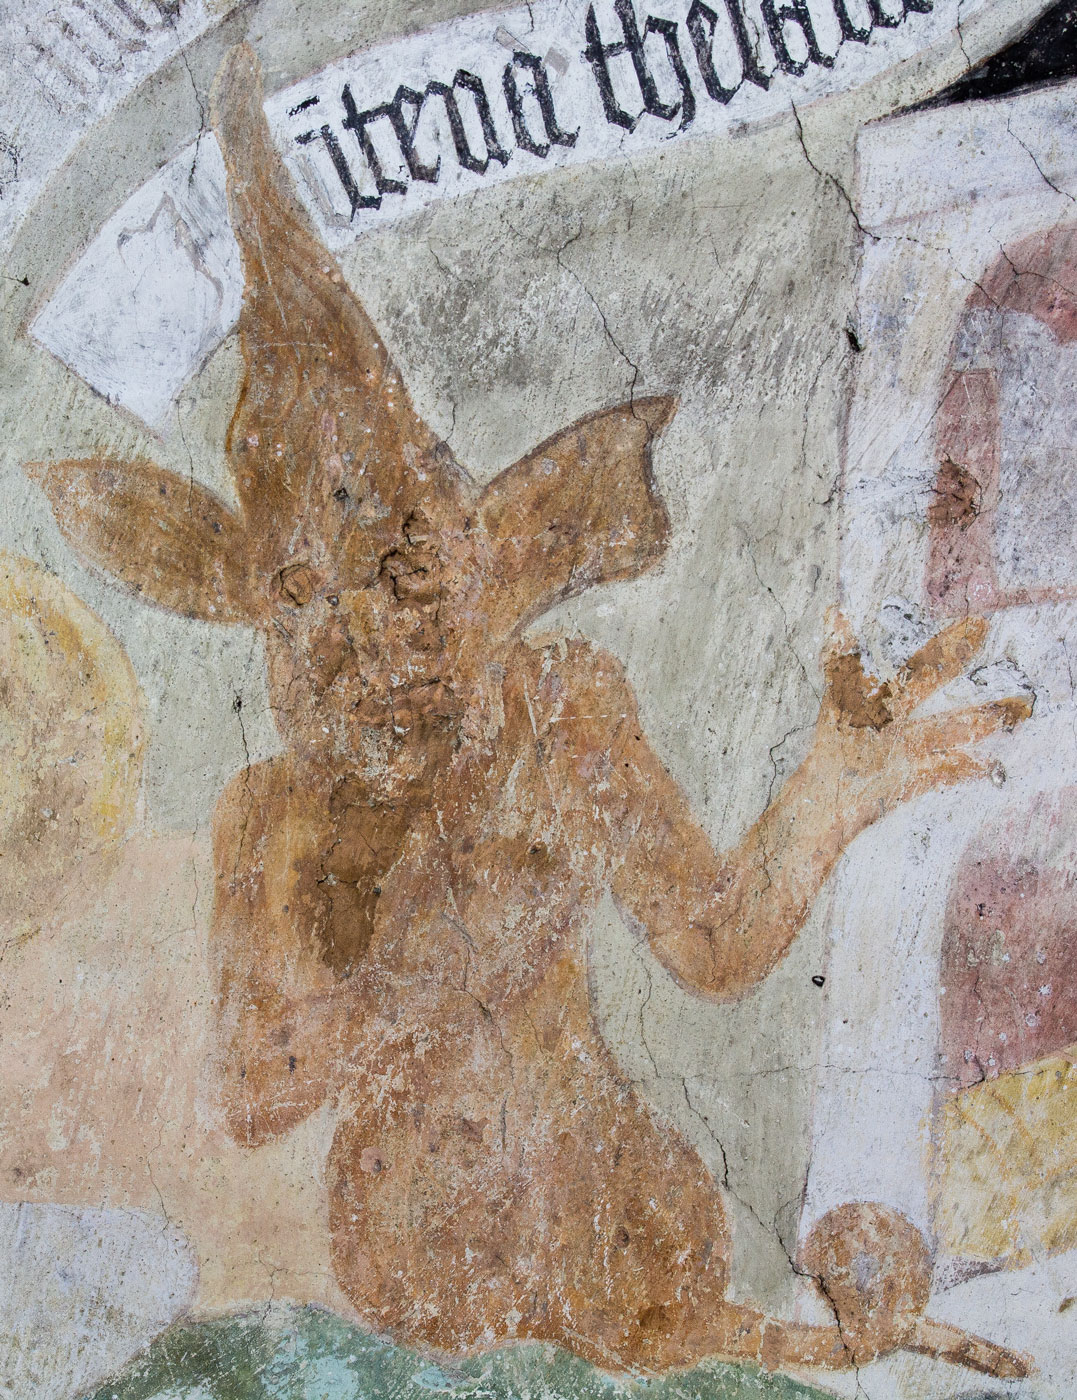 Ars moriendi: Frestelse till avaricia. En djävul pekar på huset (detalj) - Solna kyrka